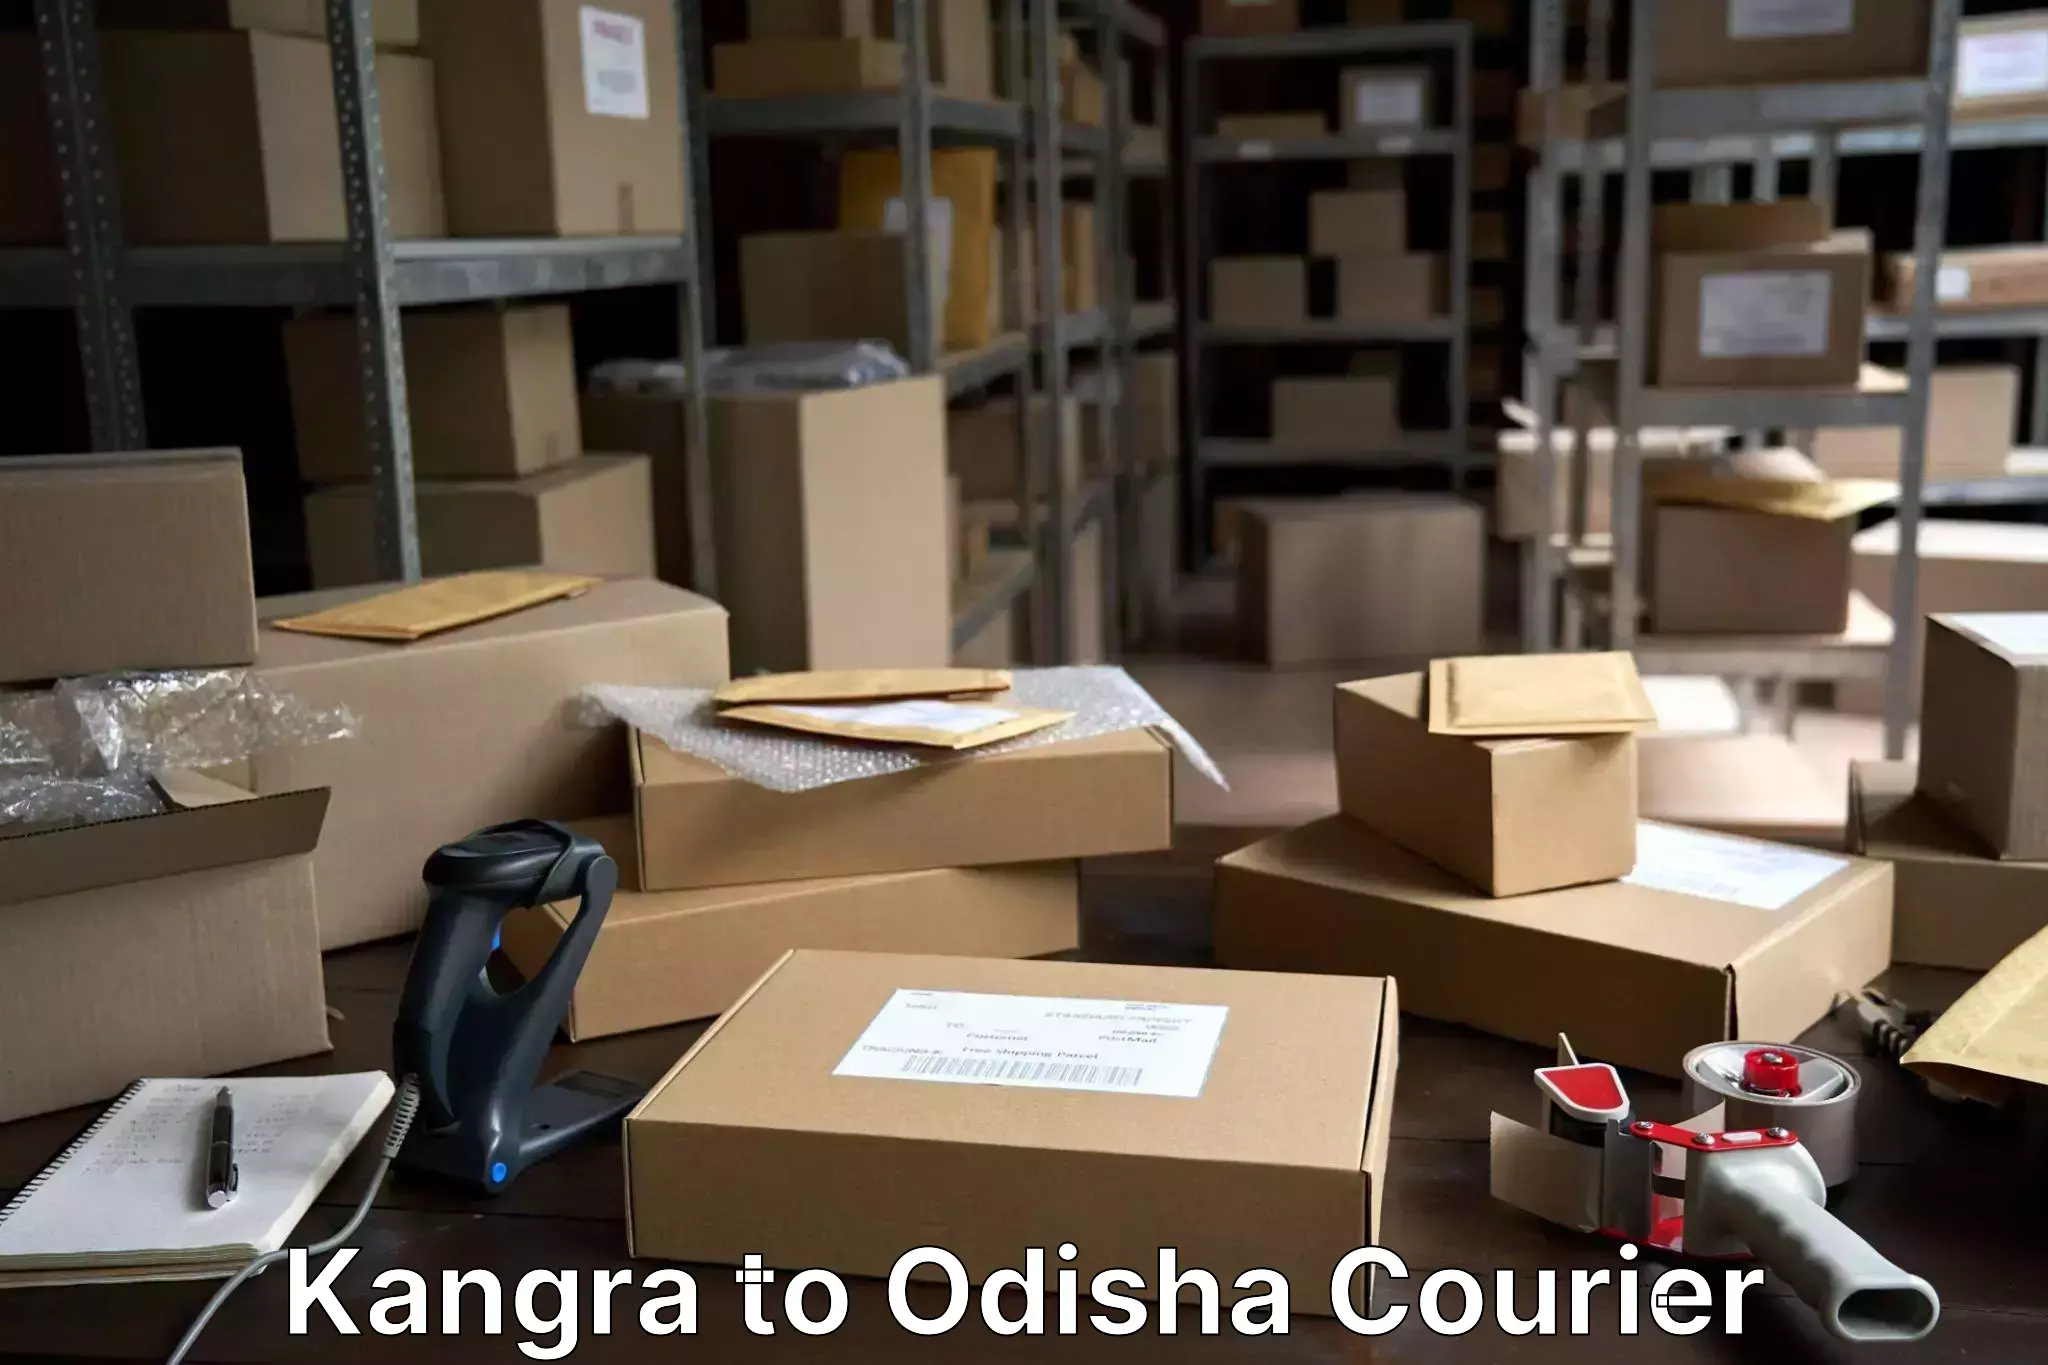 Baggage transport network Kangra to Dhamanagar